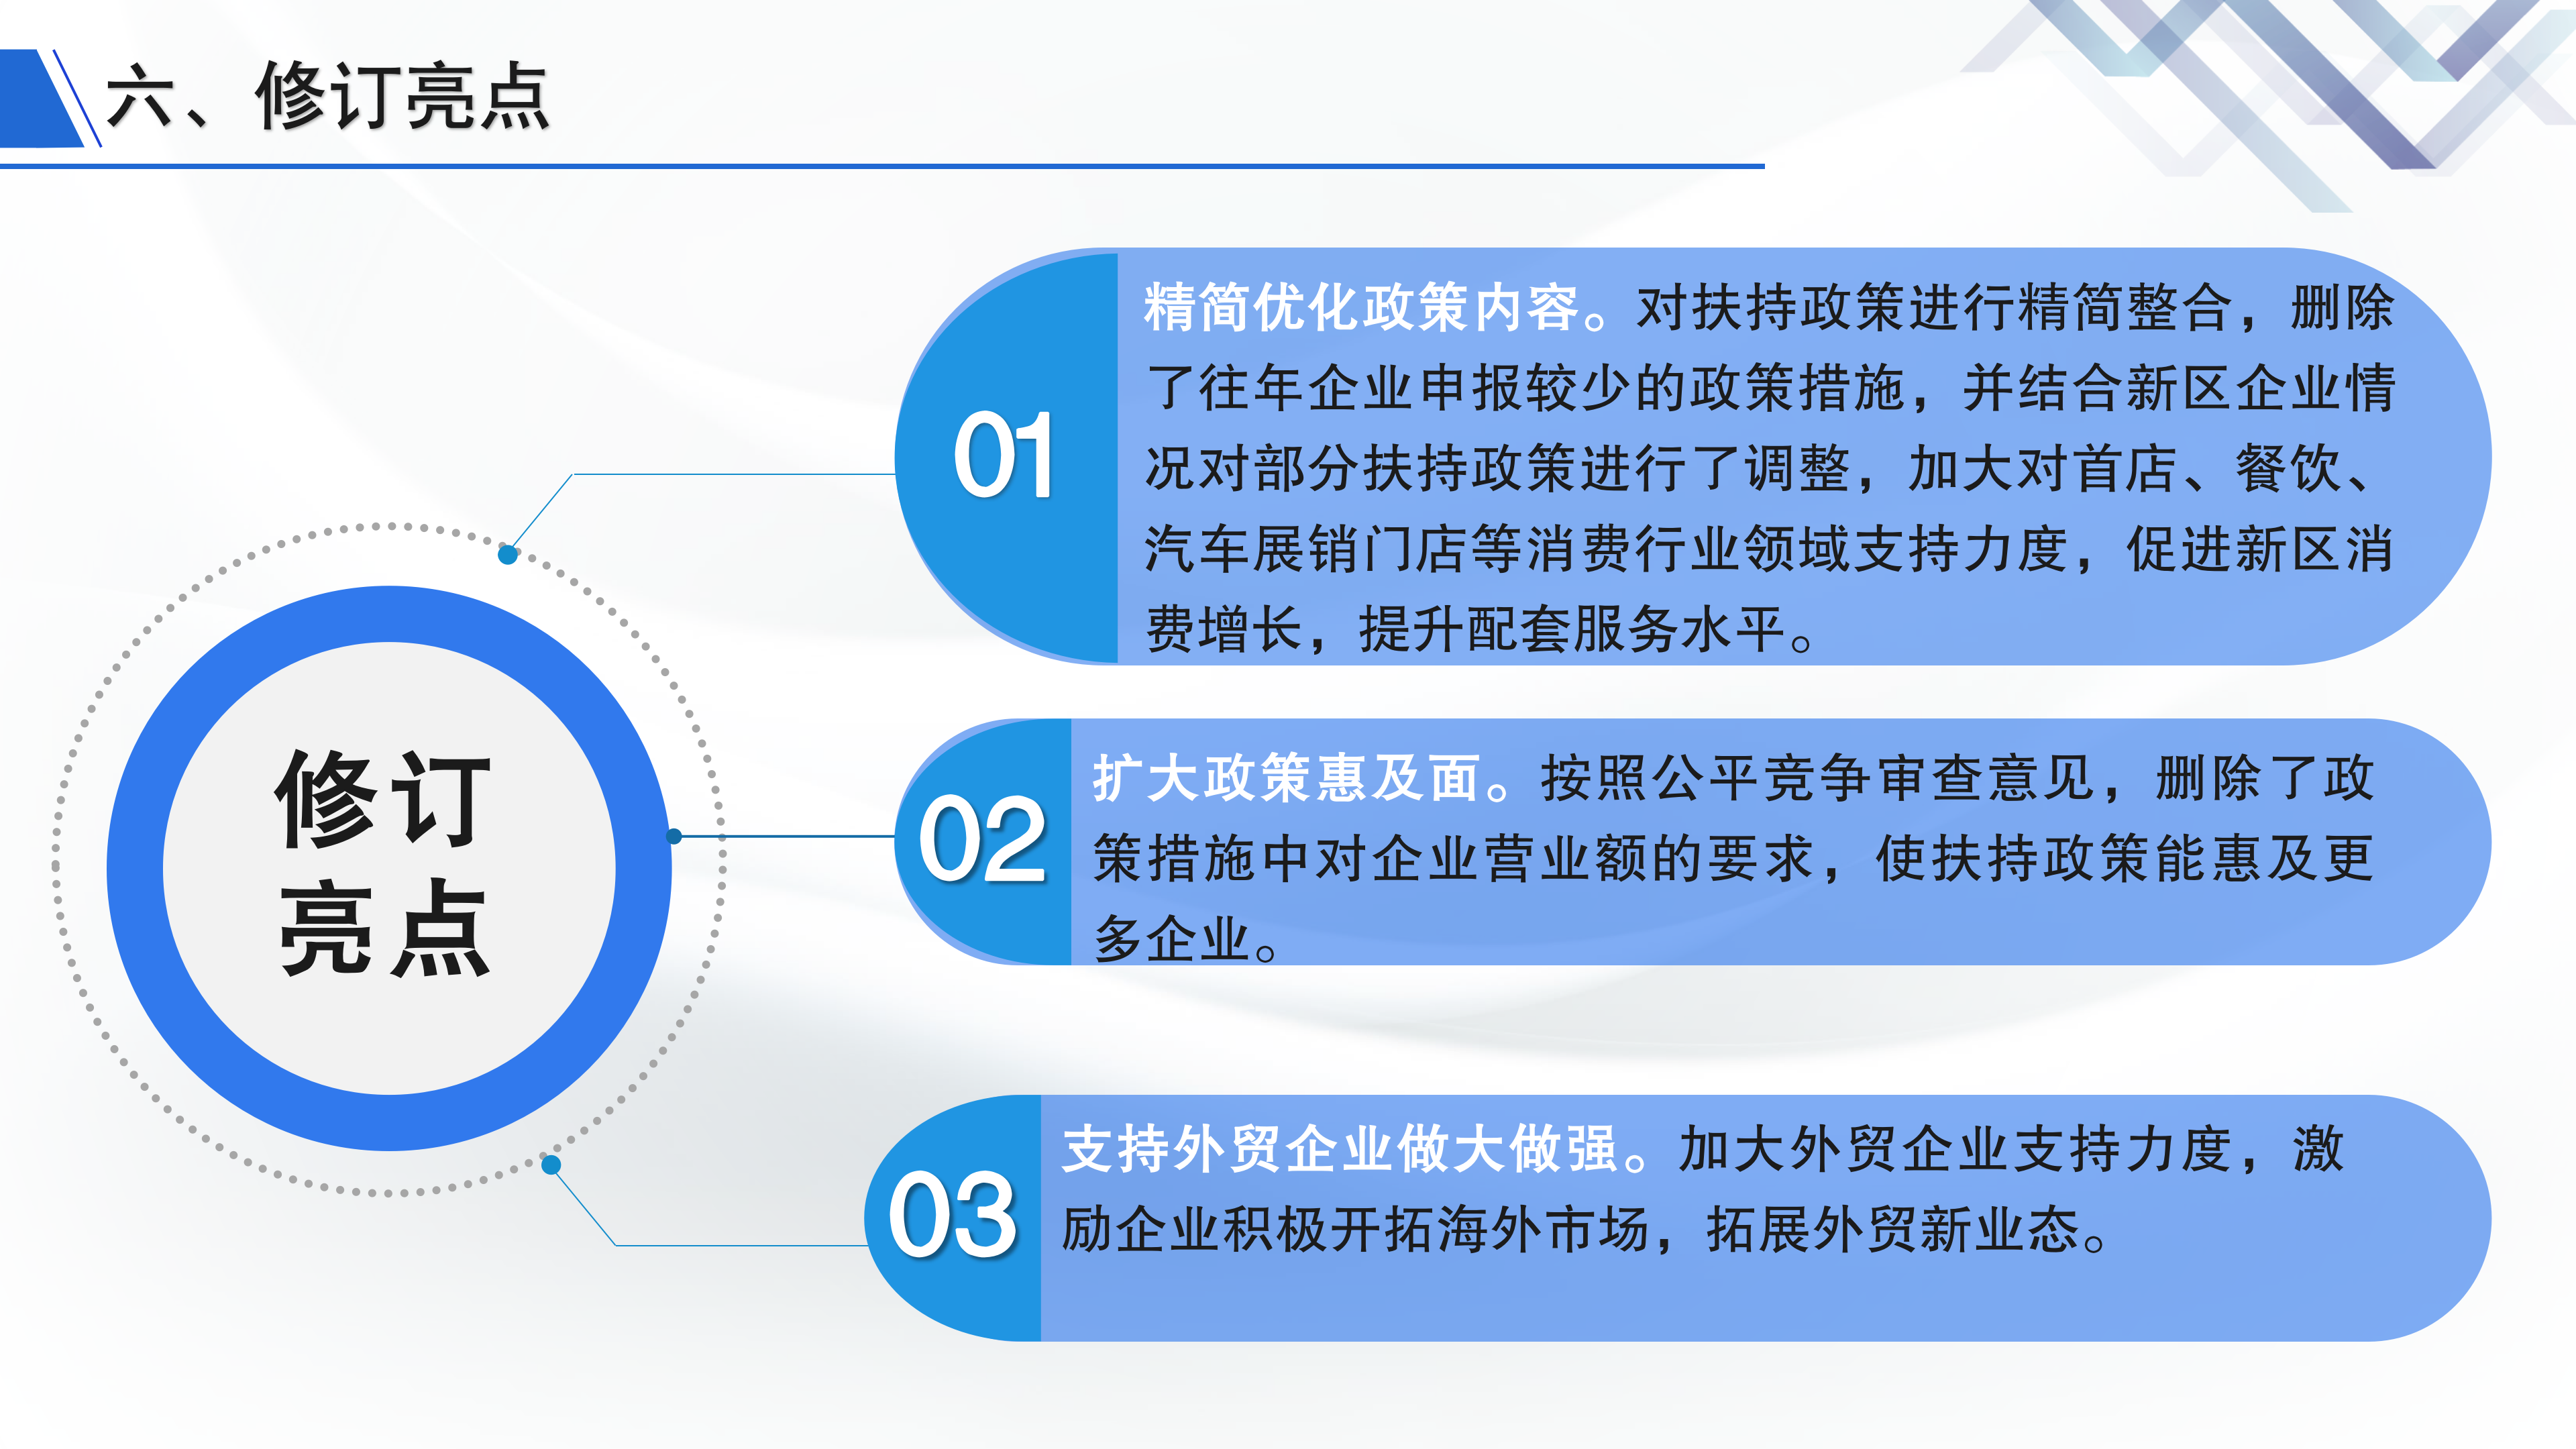 深圳市大鹏新区关于加快商贸金融业发展的若干措施》政策解读_10.png